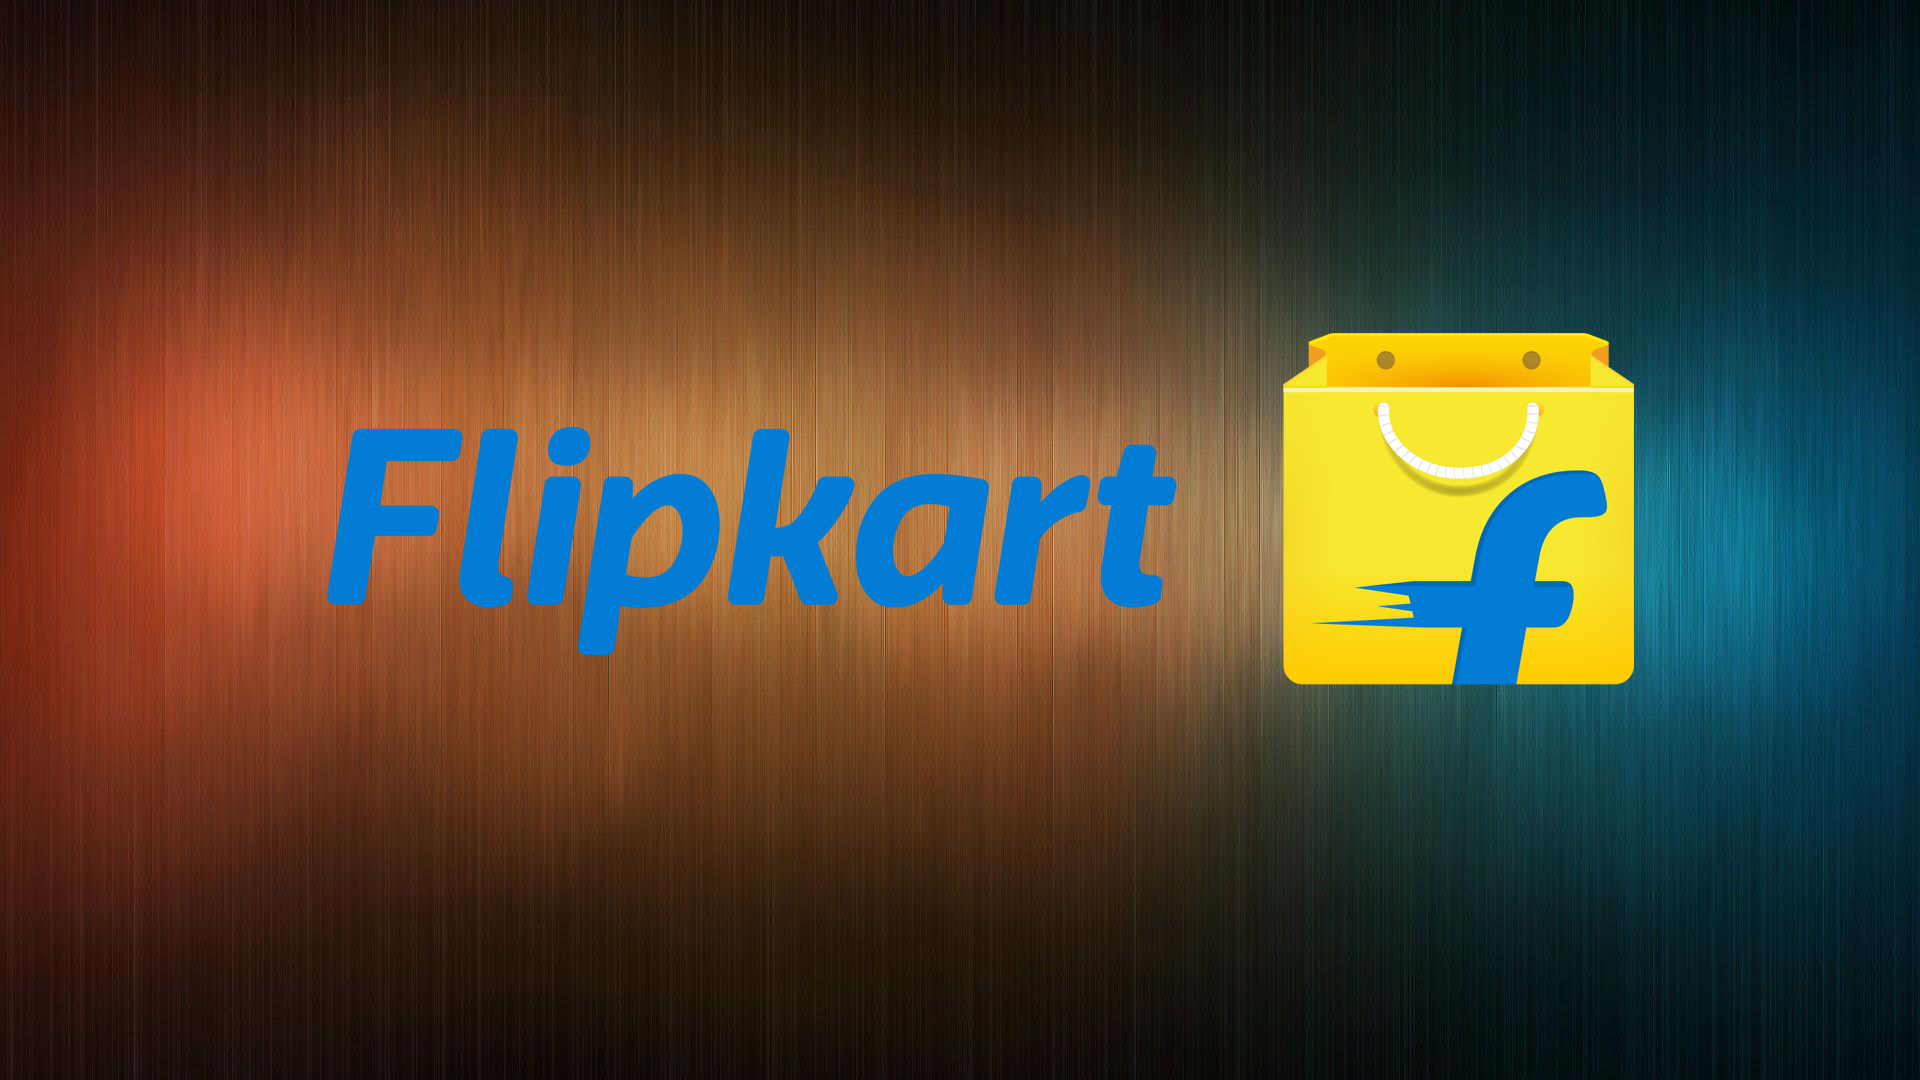 到2023年Flipkart有望超过印度亚马逊